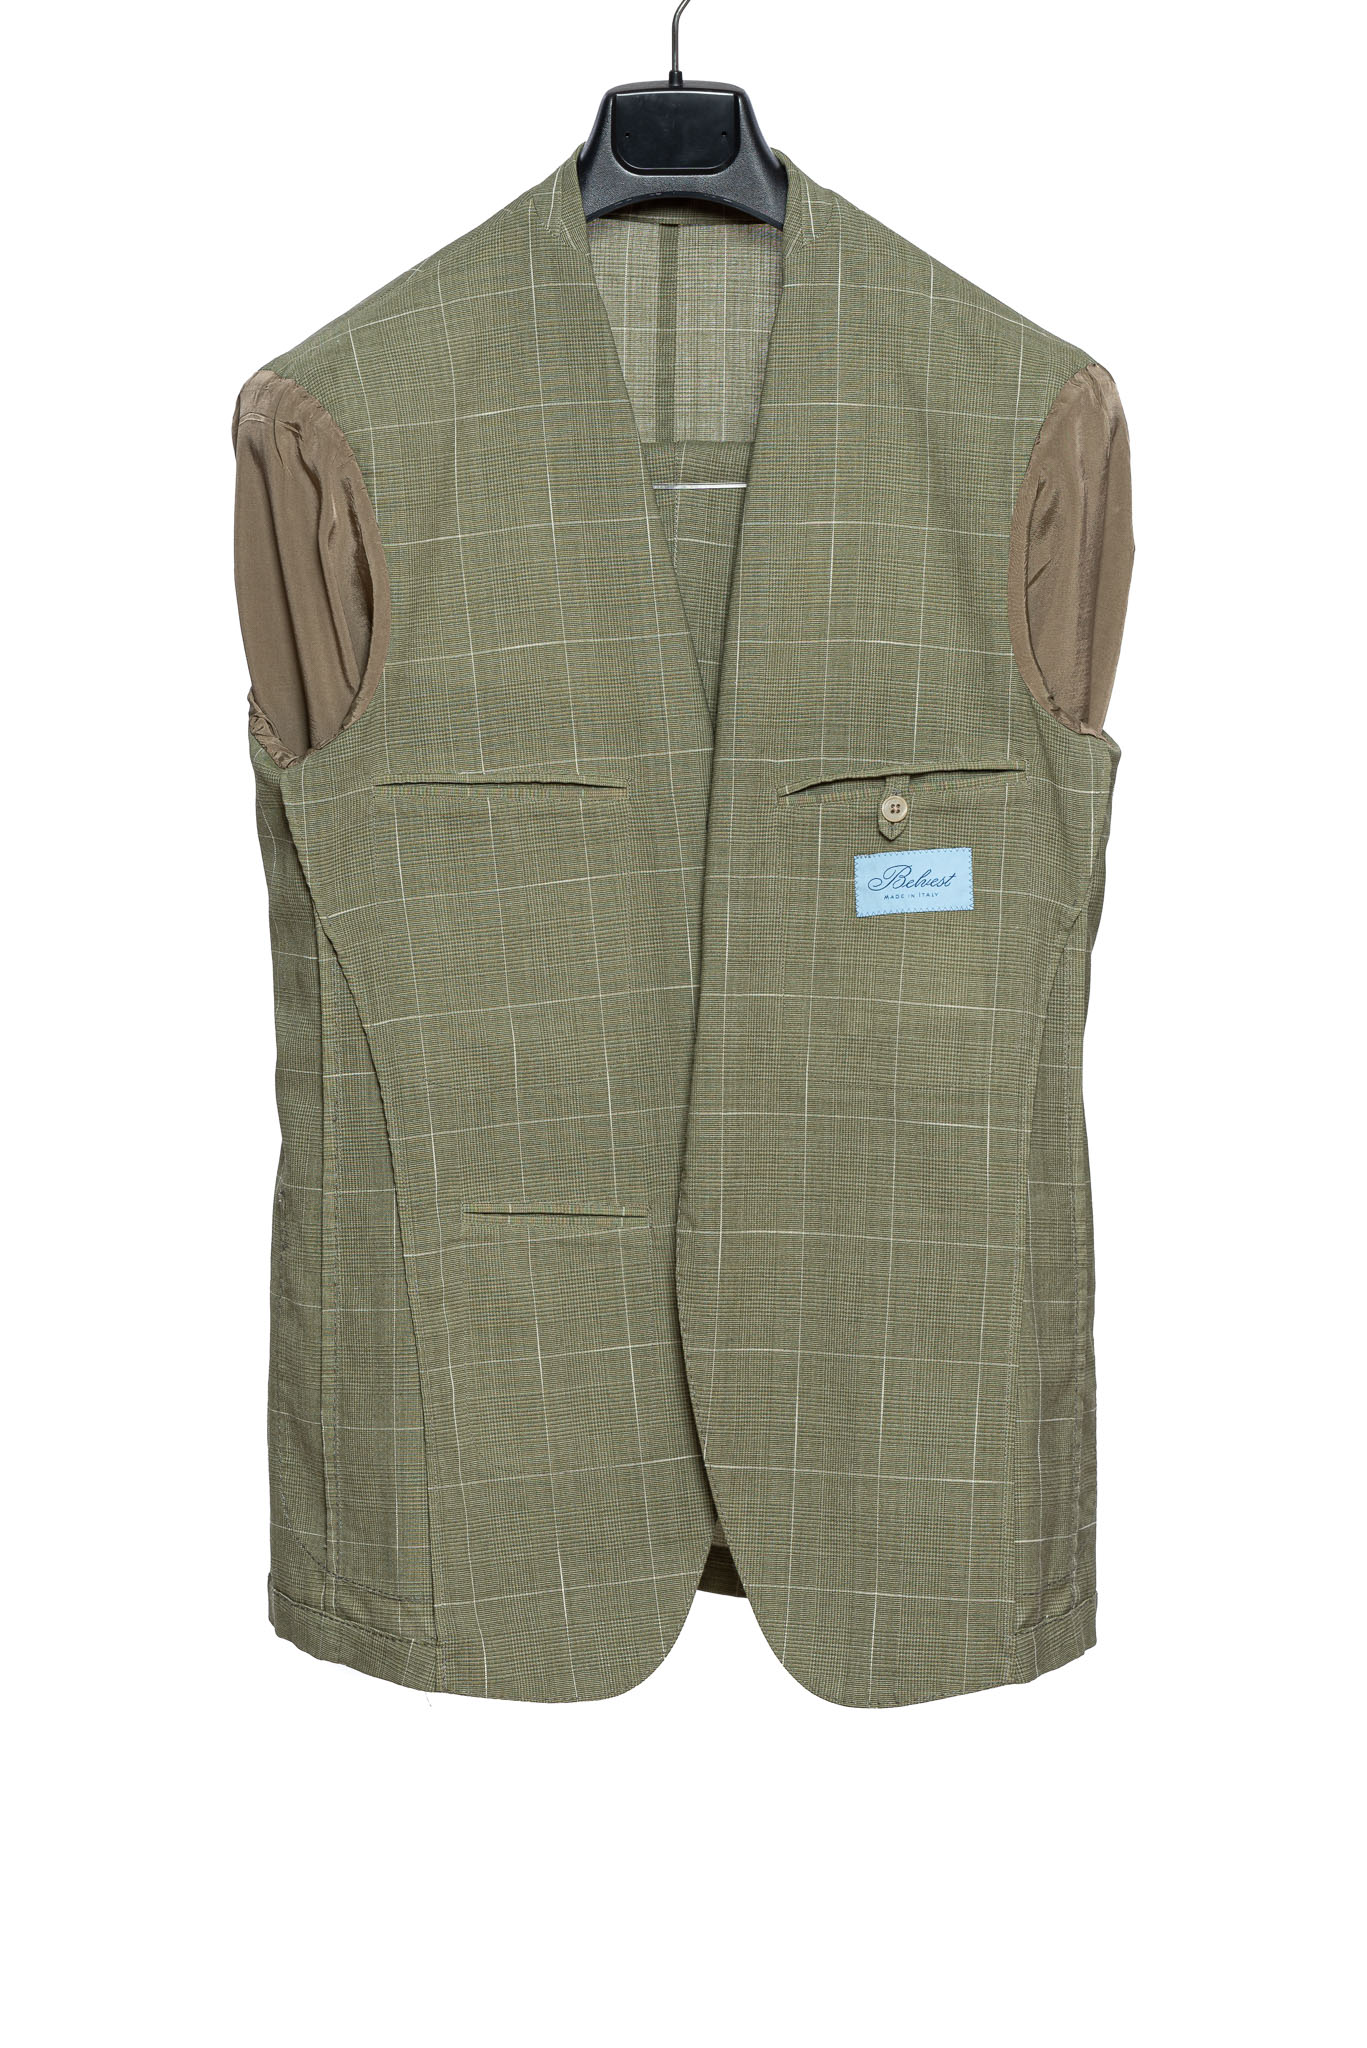 $2590 Belvest Green Checks Sport Suit Light Wool 40 US / 50 EU 7R Slim ...